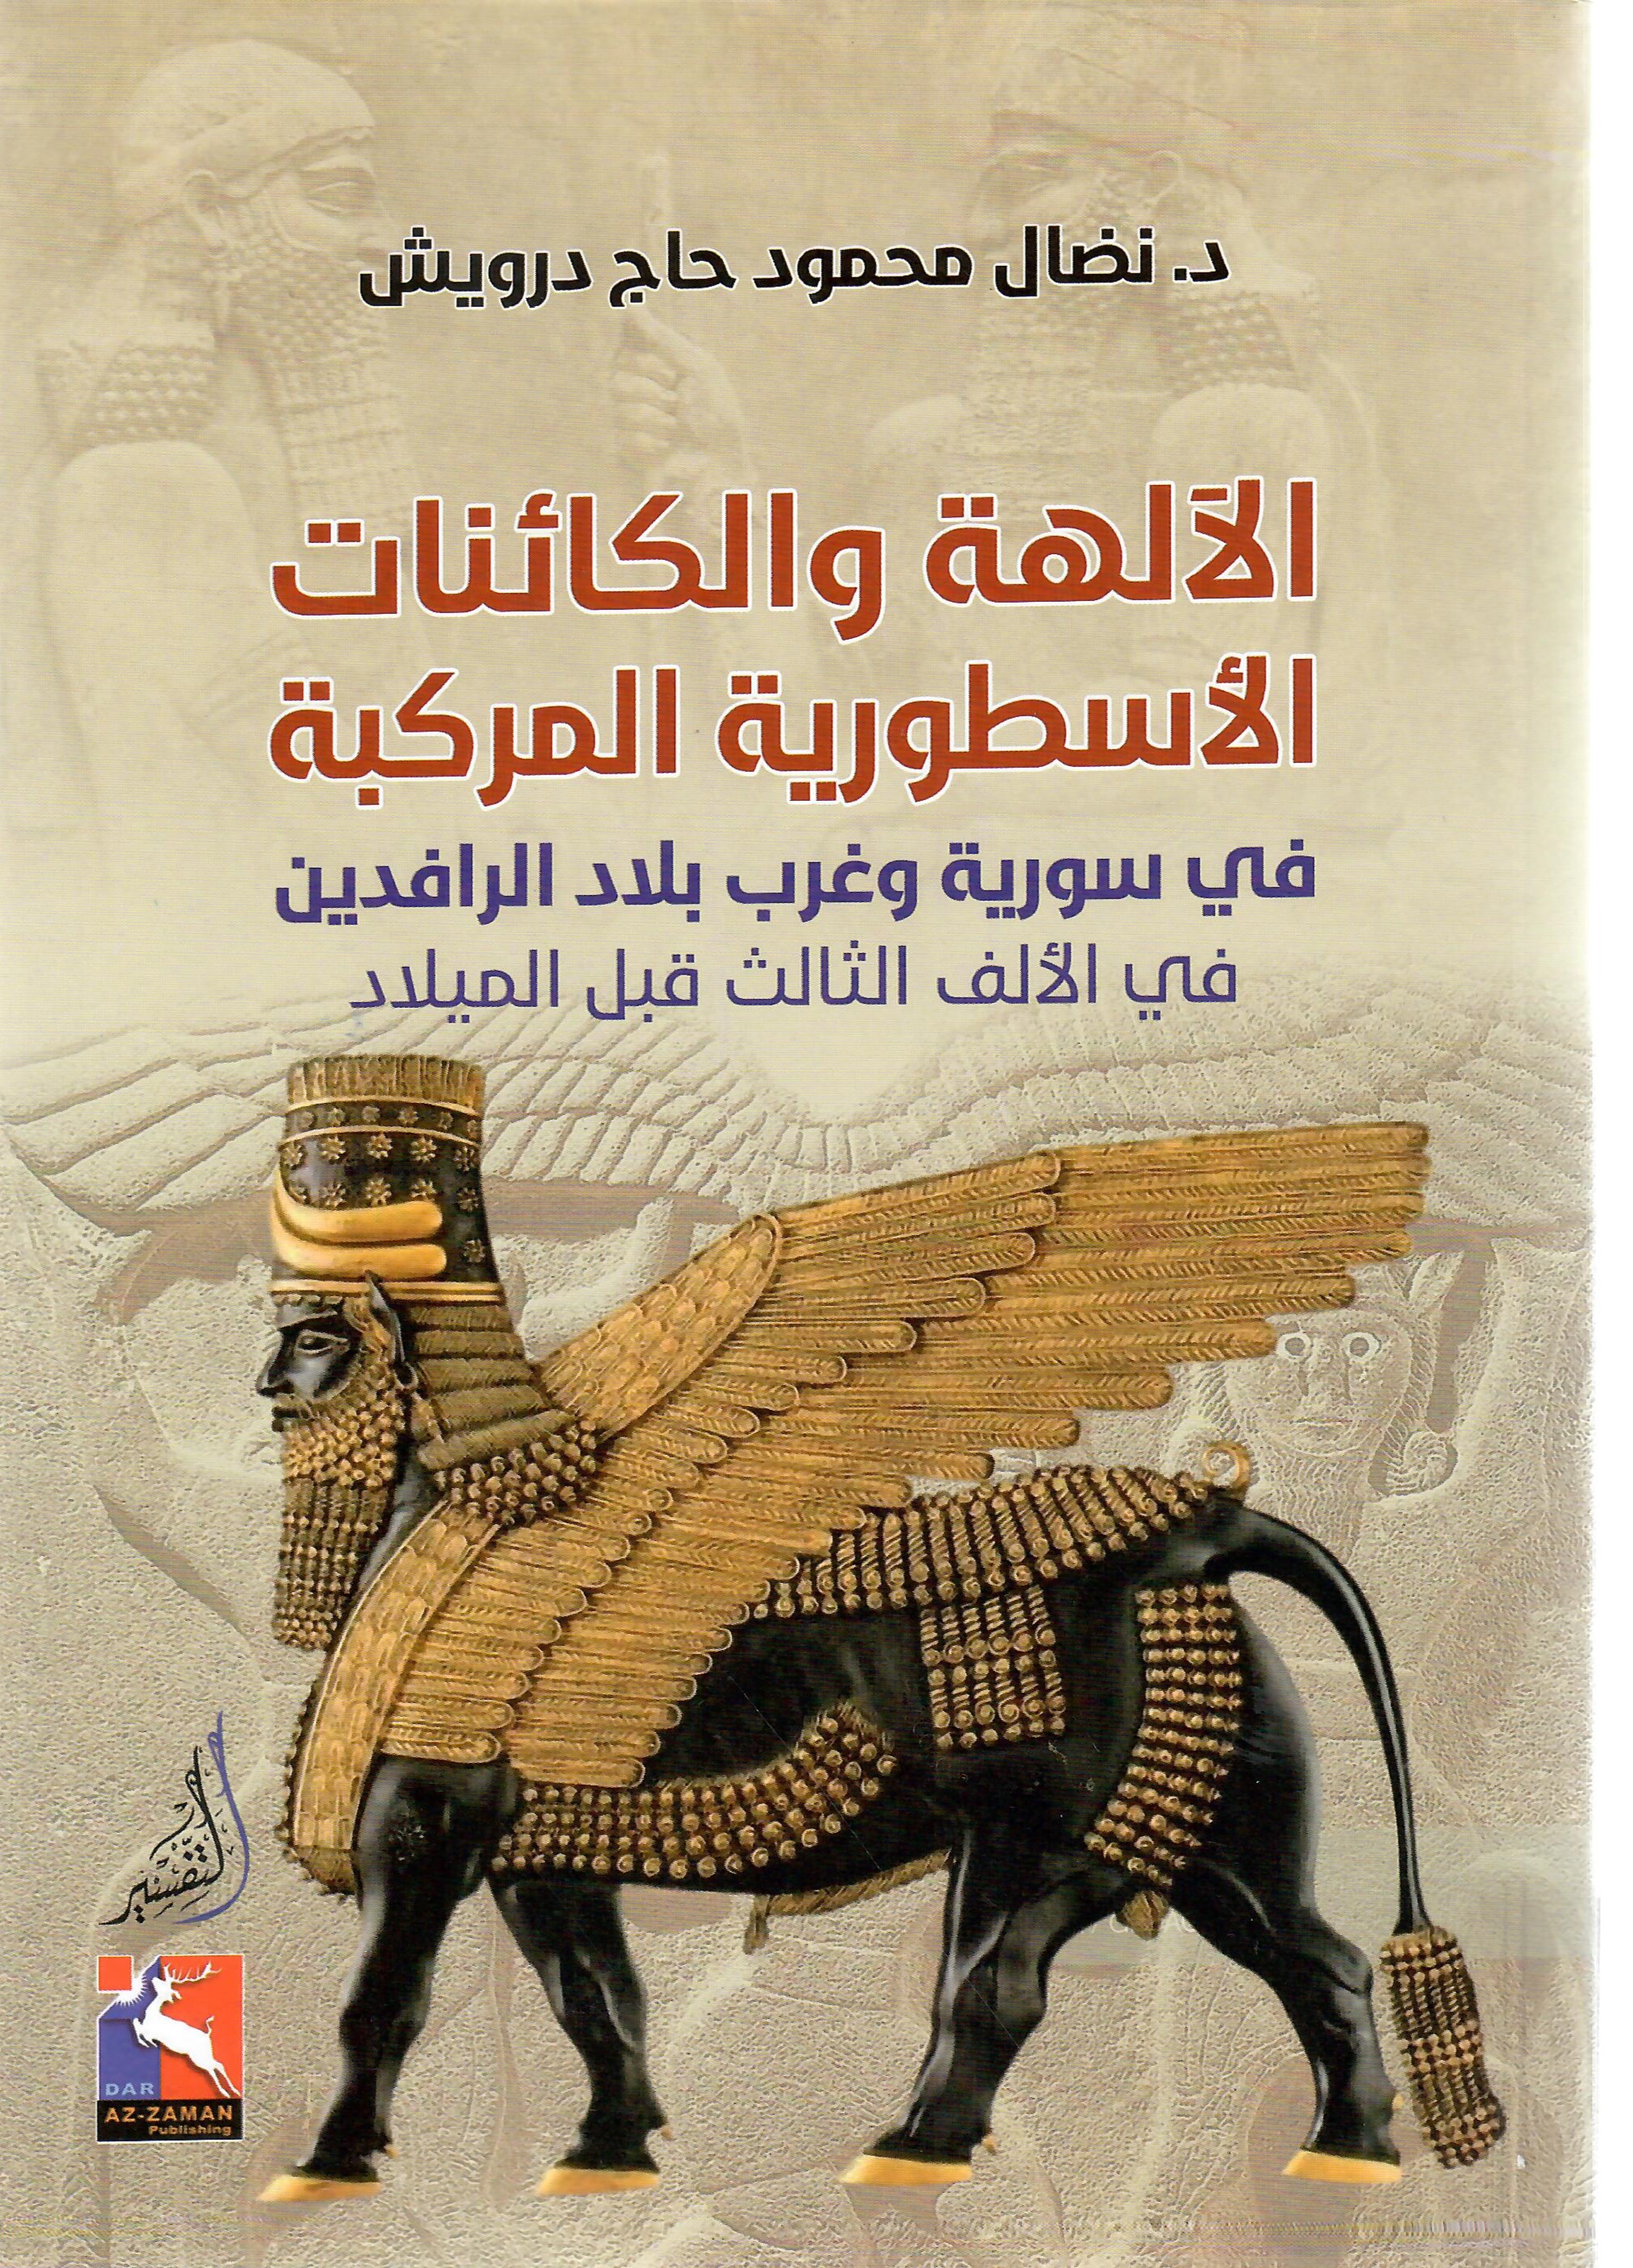 الآلهة والكائنات الأسطورية المركبة في سورية وغرب بلاد الرافدين في االالف الثالث قبل الميلاد